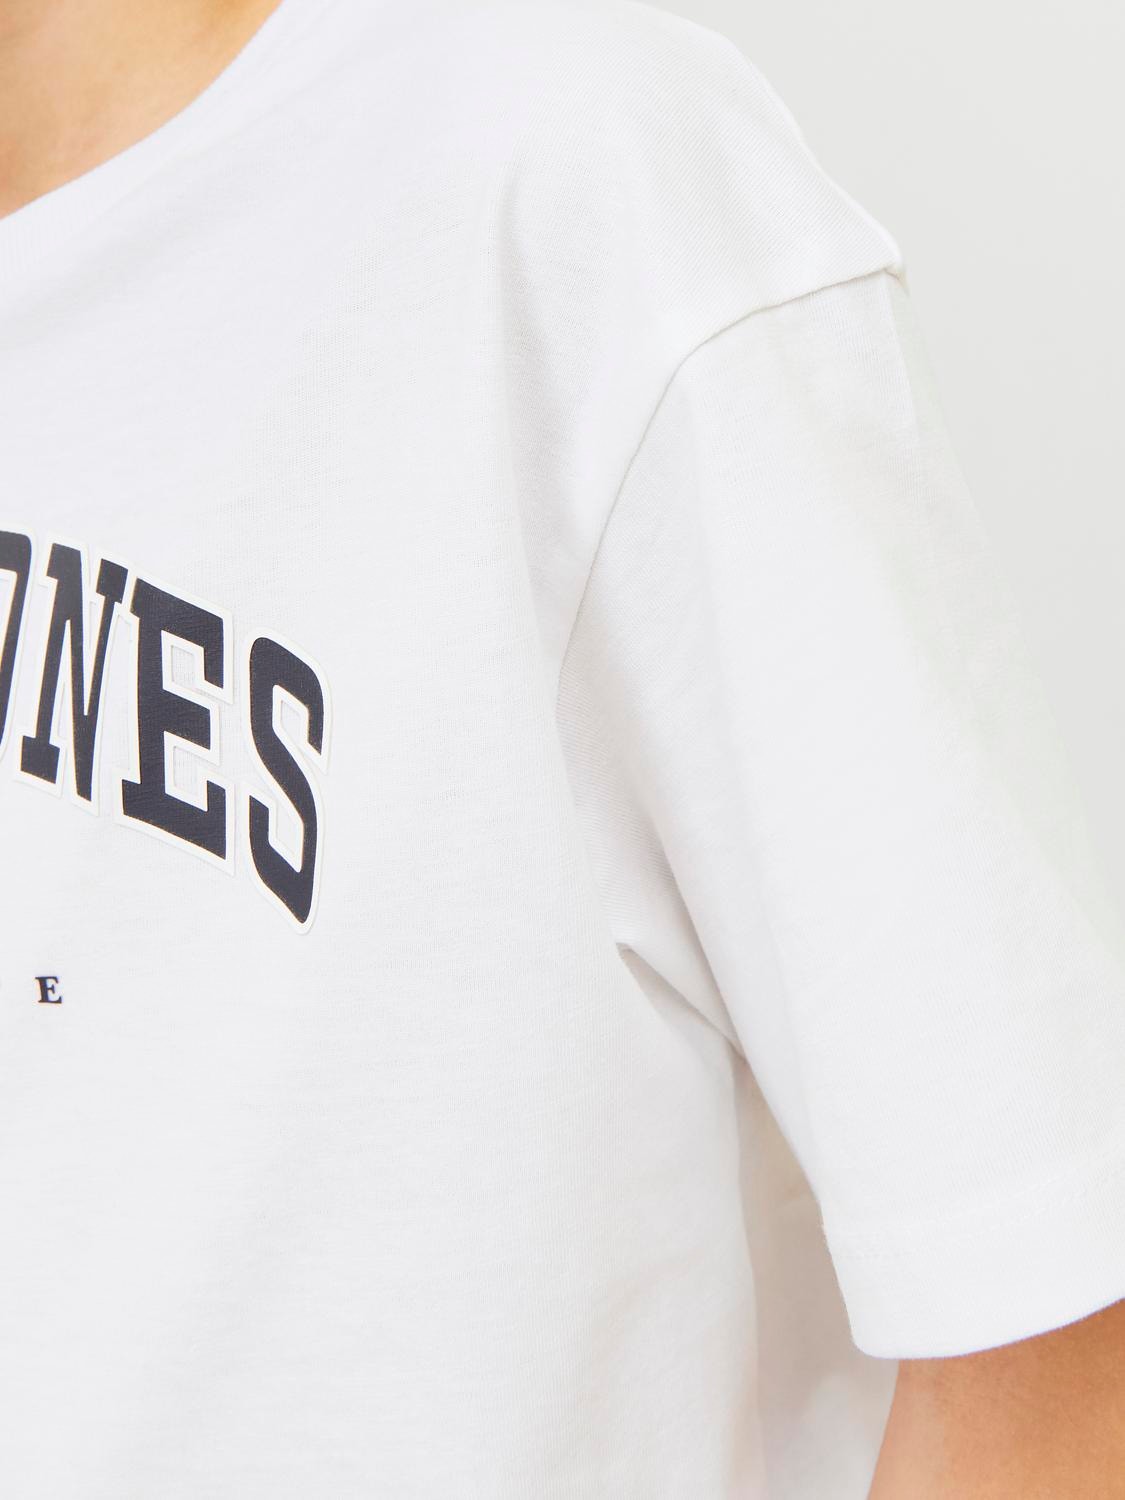 Jack & Jones Logotipas Marškinėliai For boys -White - 12258924